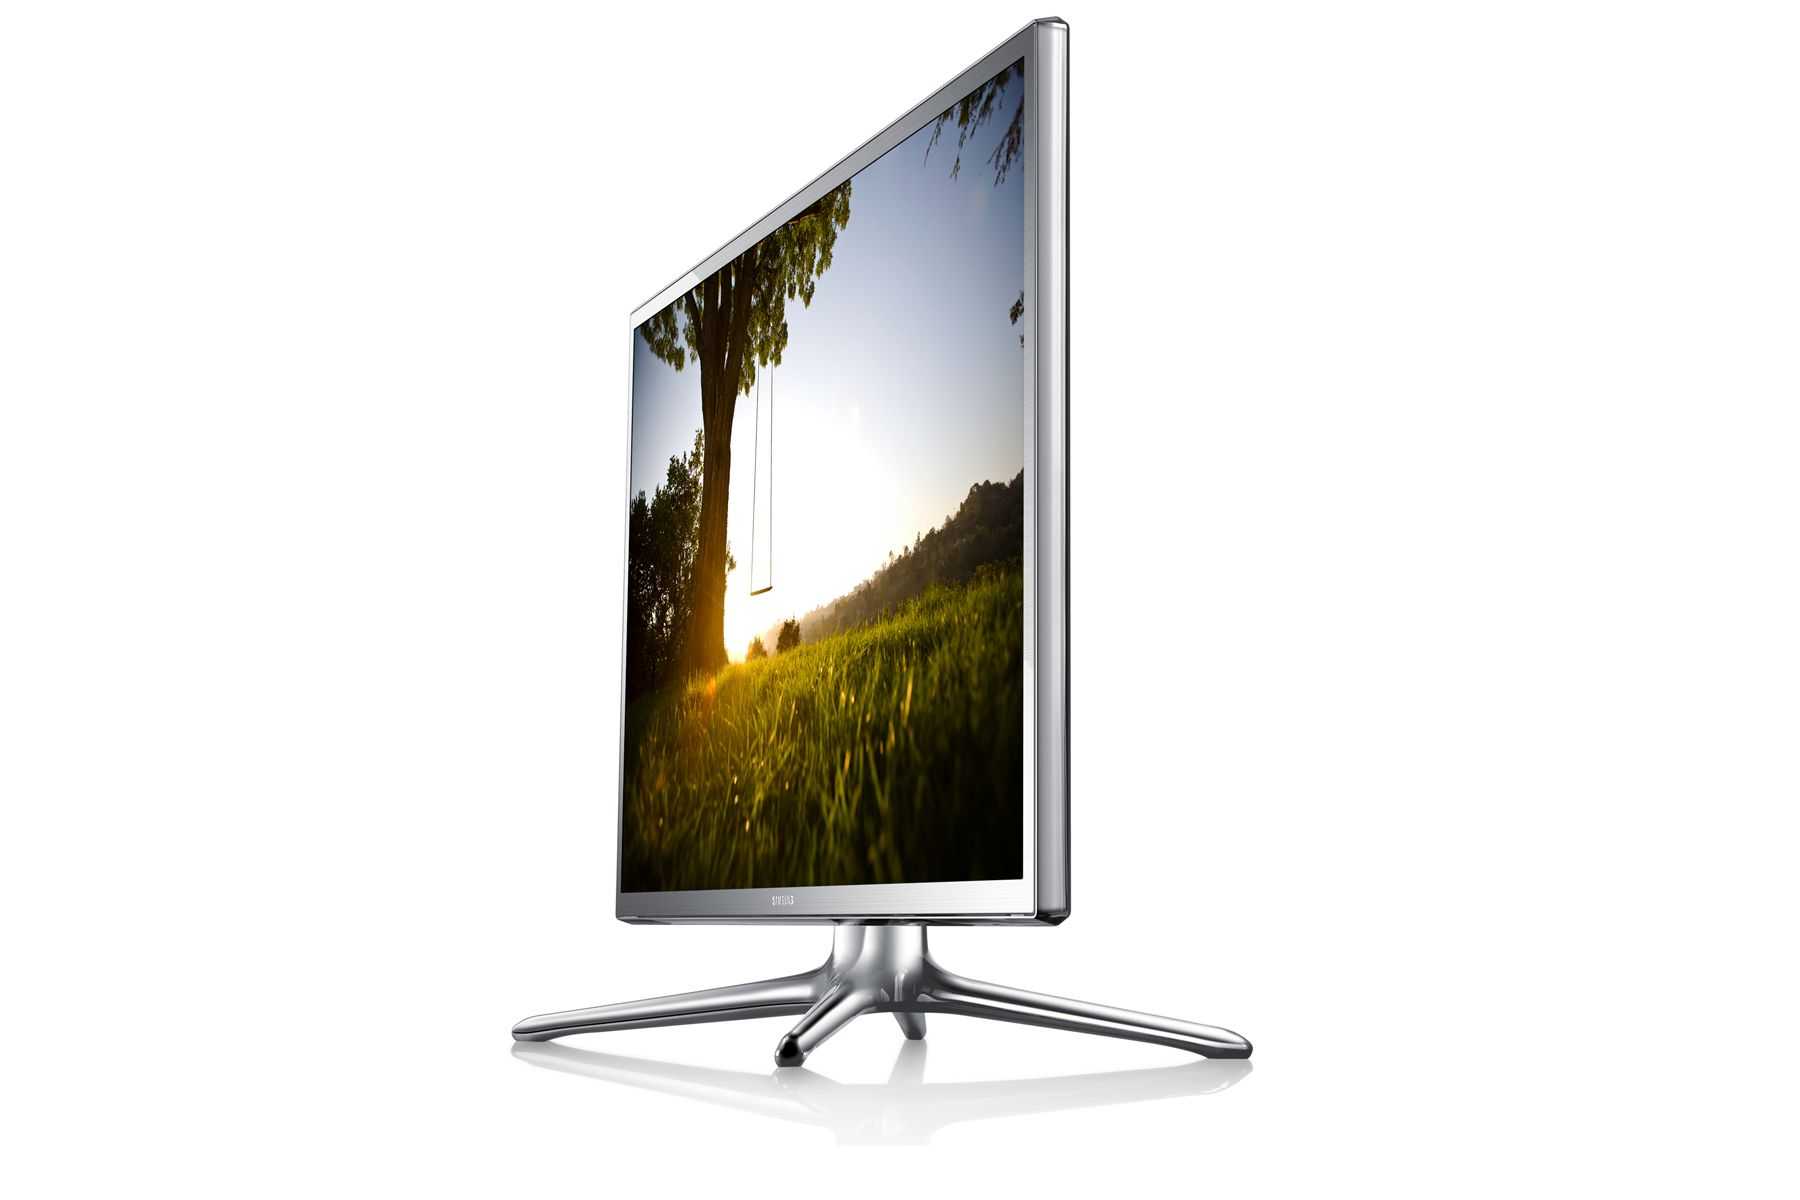 Samsung ue40f6800ав - купить , скидки, цена, отзывы, обзор, характеристики - телевизоры